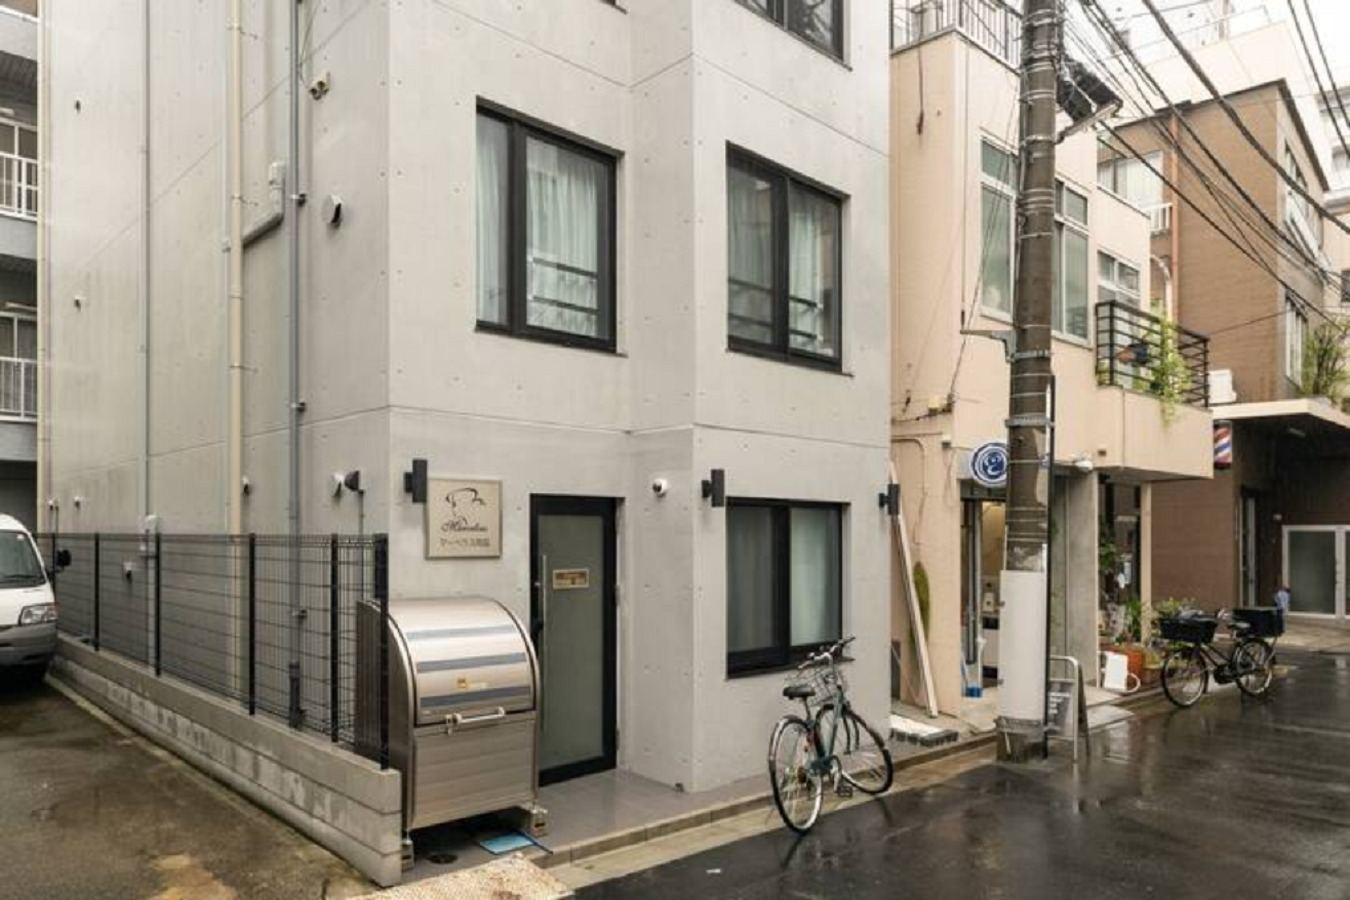 New apartment #102 両国駅徒歩6分  セルフチェックイン 高速WI-FI  浅草近